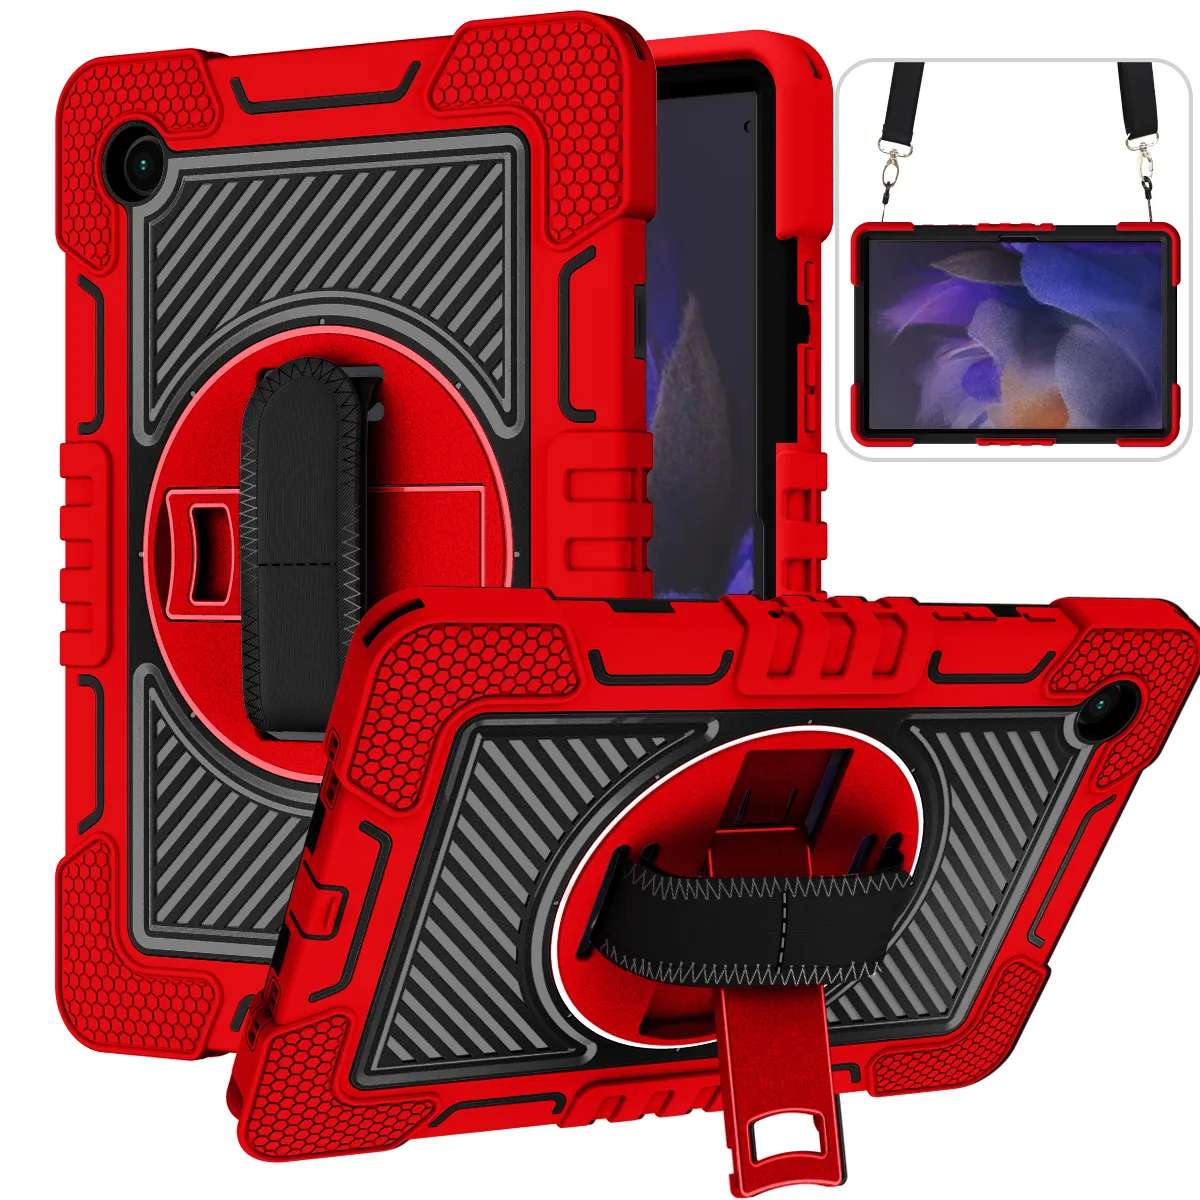 제조사 공급 업체 밝은 빨강 + 검정 케이스 충격 방지 태블릿 360 회전 손 어깨 태블릿 커버 삼성 탭 A 8 2021